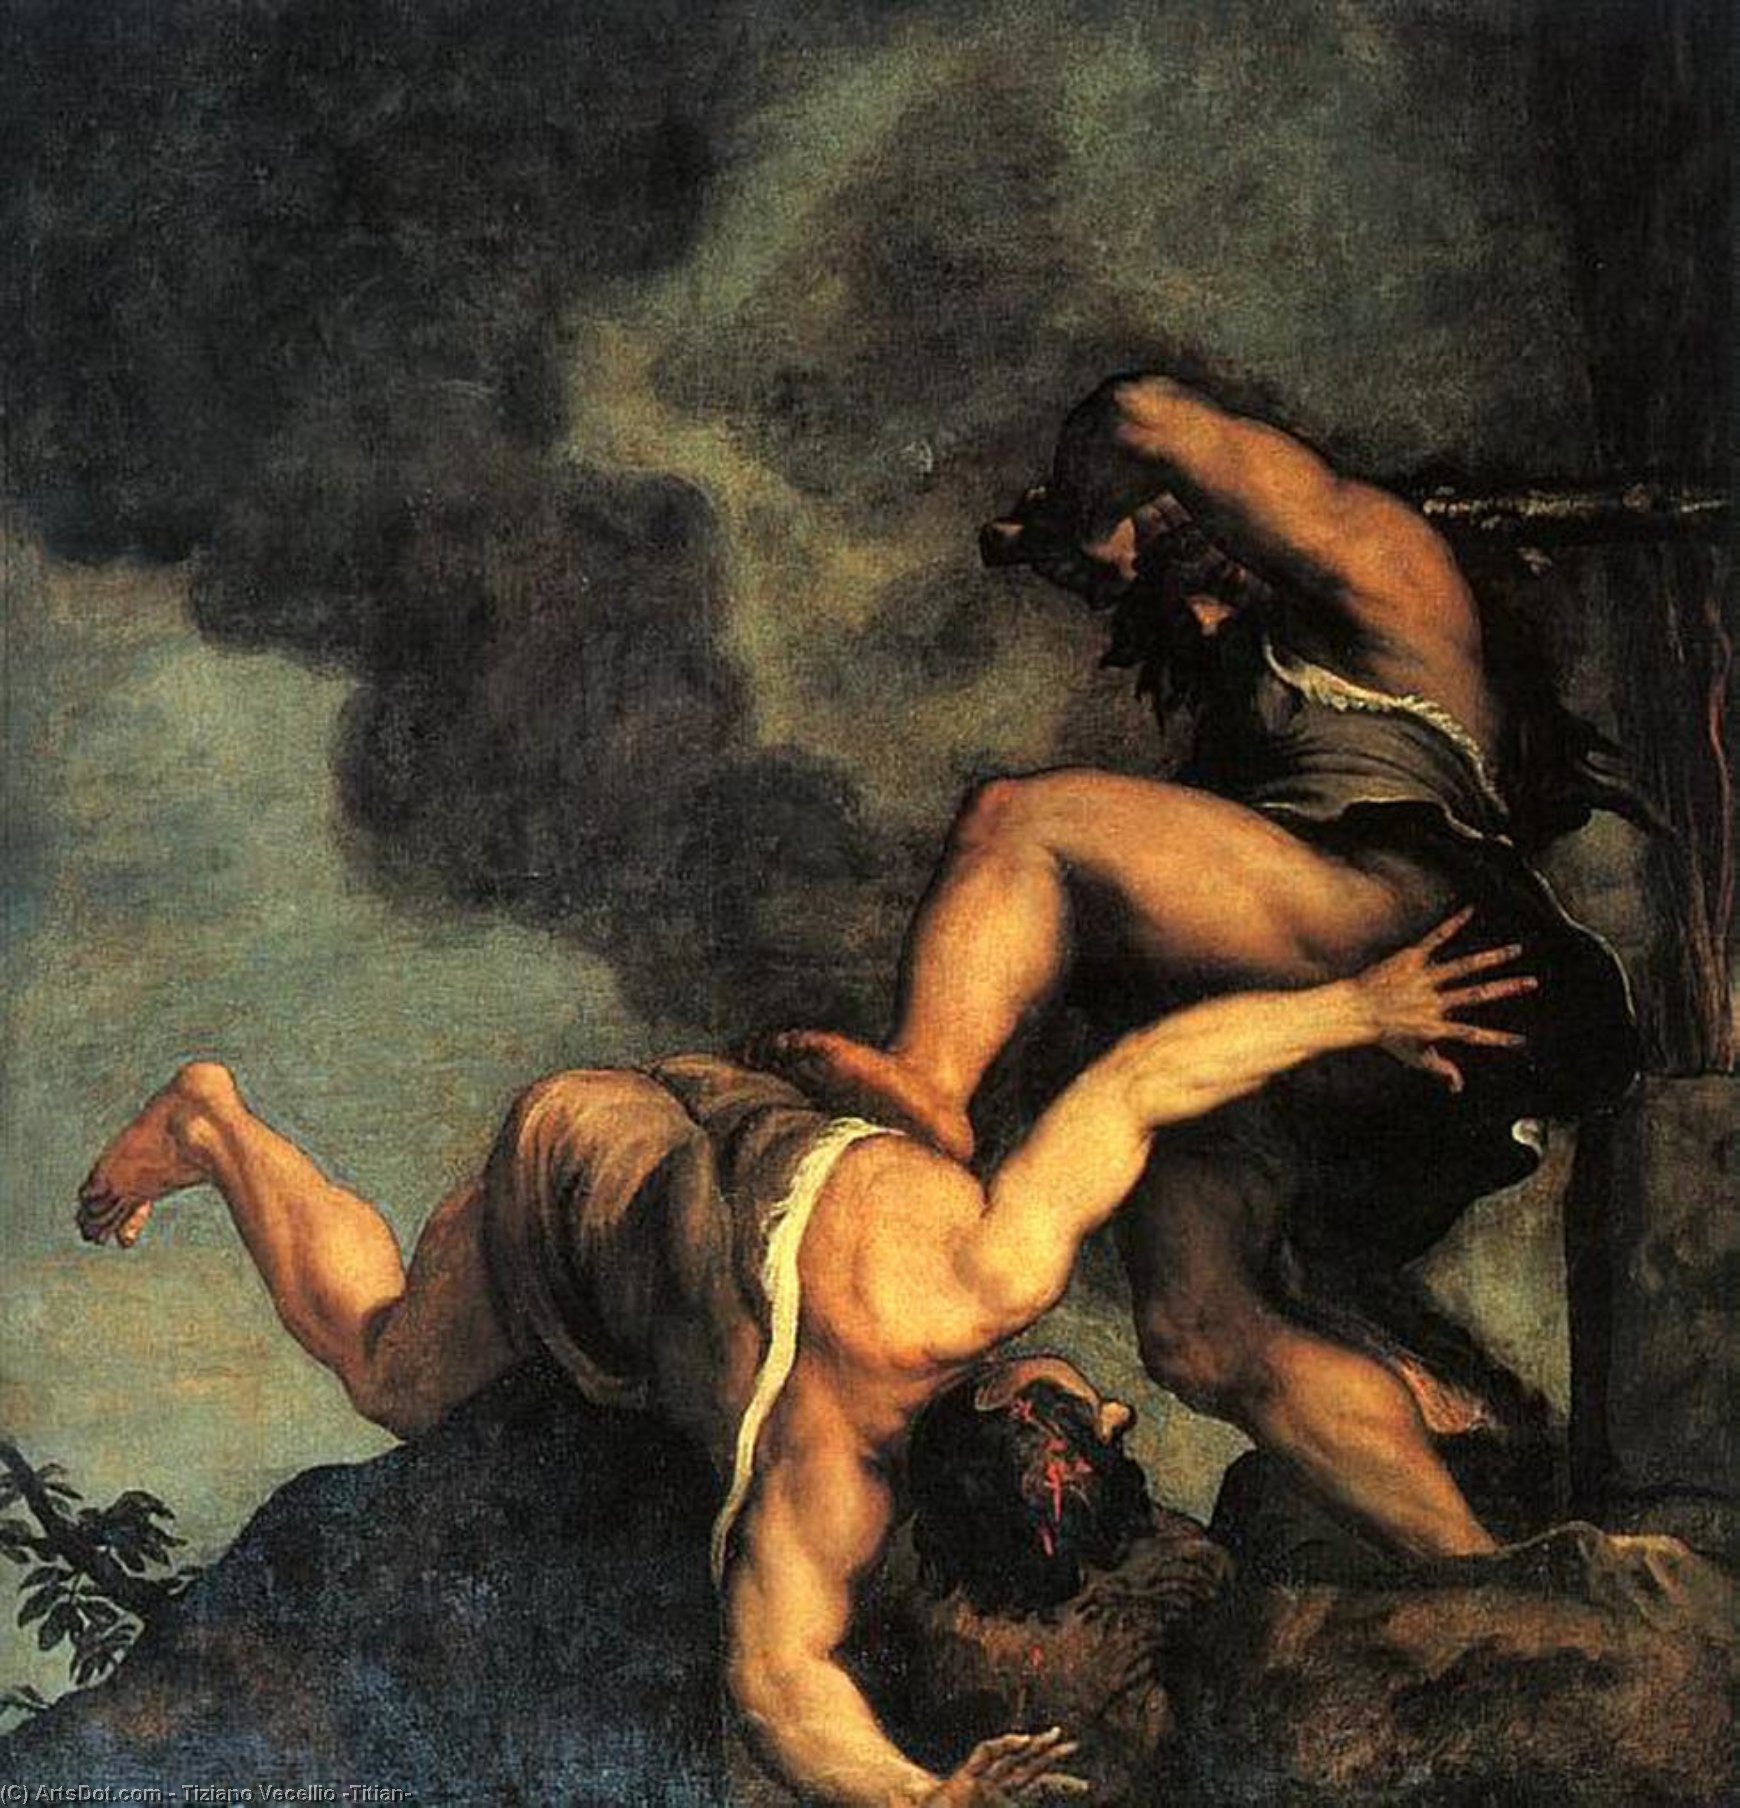 WikiOO.org - Encyclopedia of Fine Arts - Festés, Grafika Tiziano Vecellio (Titian) - Cain and abel, santa maria della salute, venice.